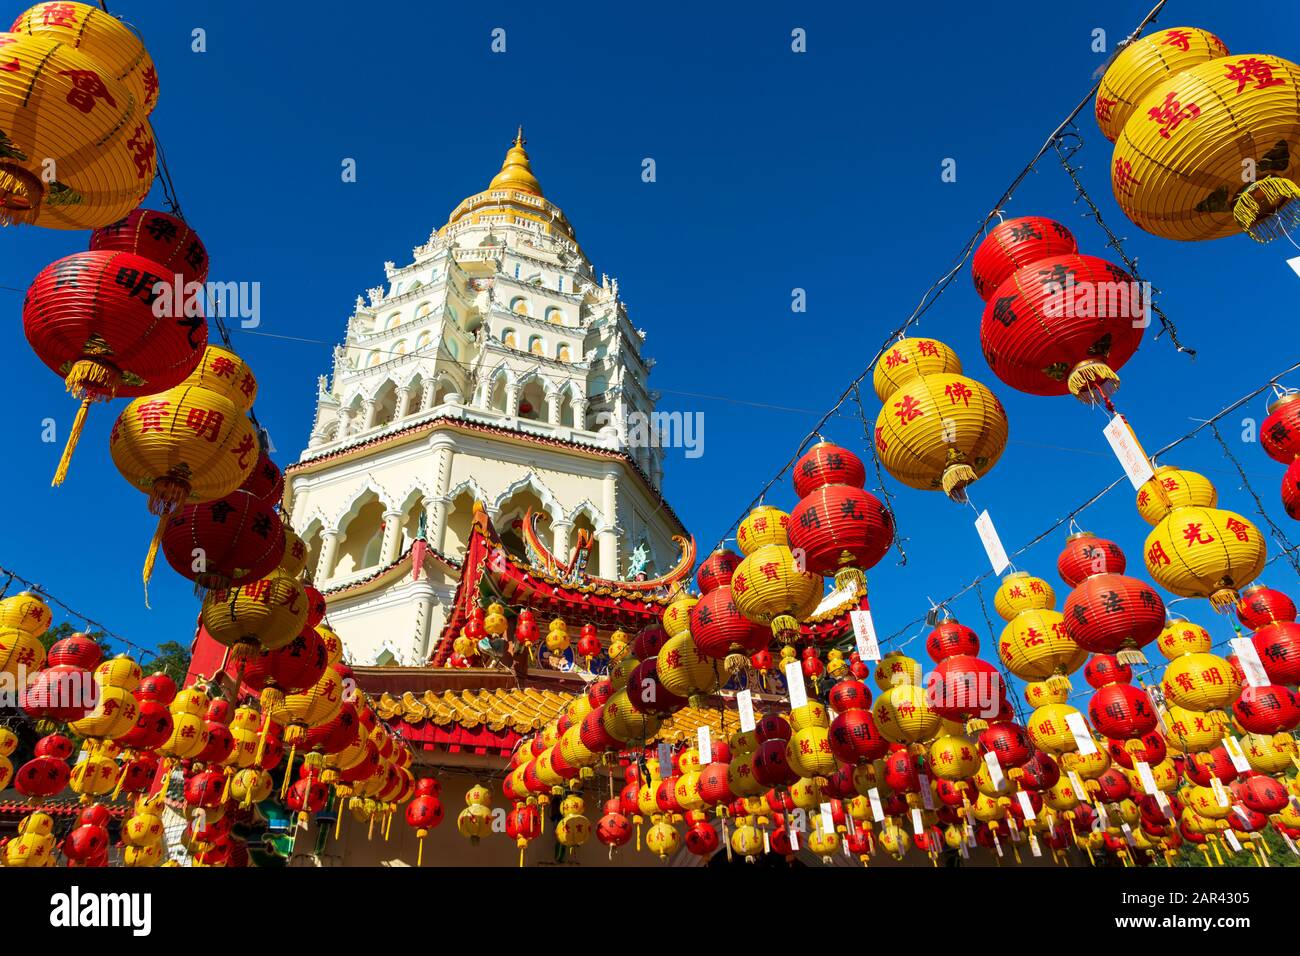 Der chinesische Kek-Lok-Si-Tempel ist mit chinesischen Papierlaternen für das chinesische Neujahr dekoriert. Der KEK Lok Si-Tempel liegt in der Nähe von Georgetown, Penang, Malaien Stockfoto